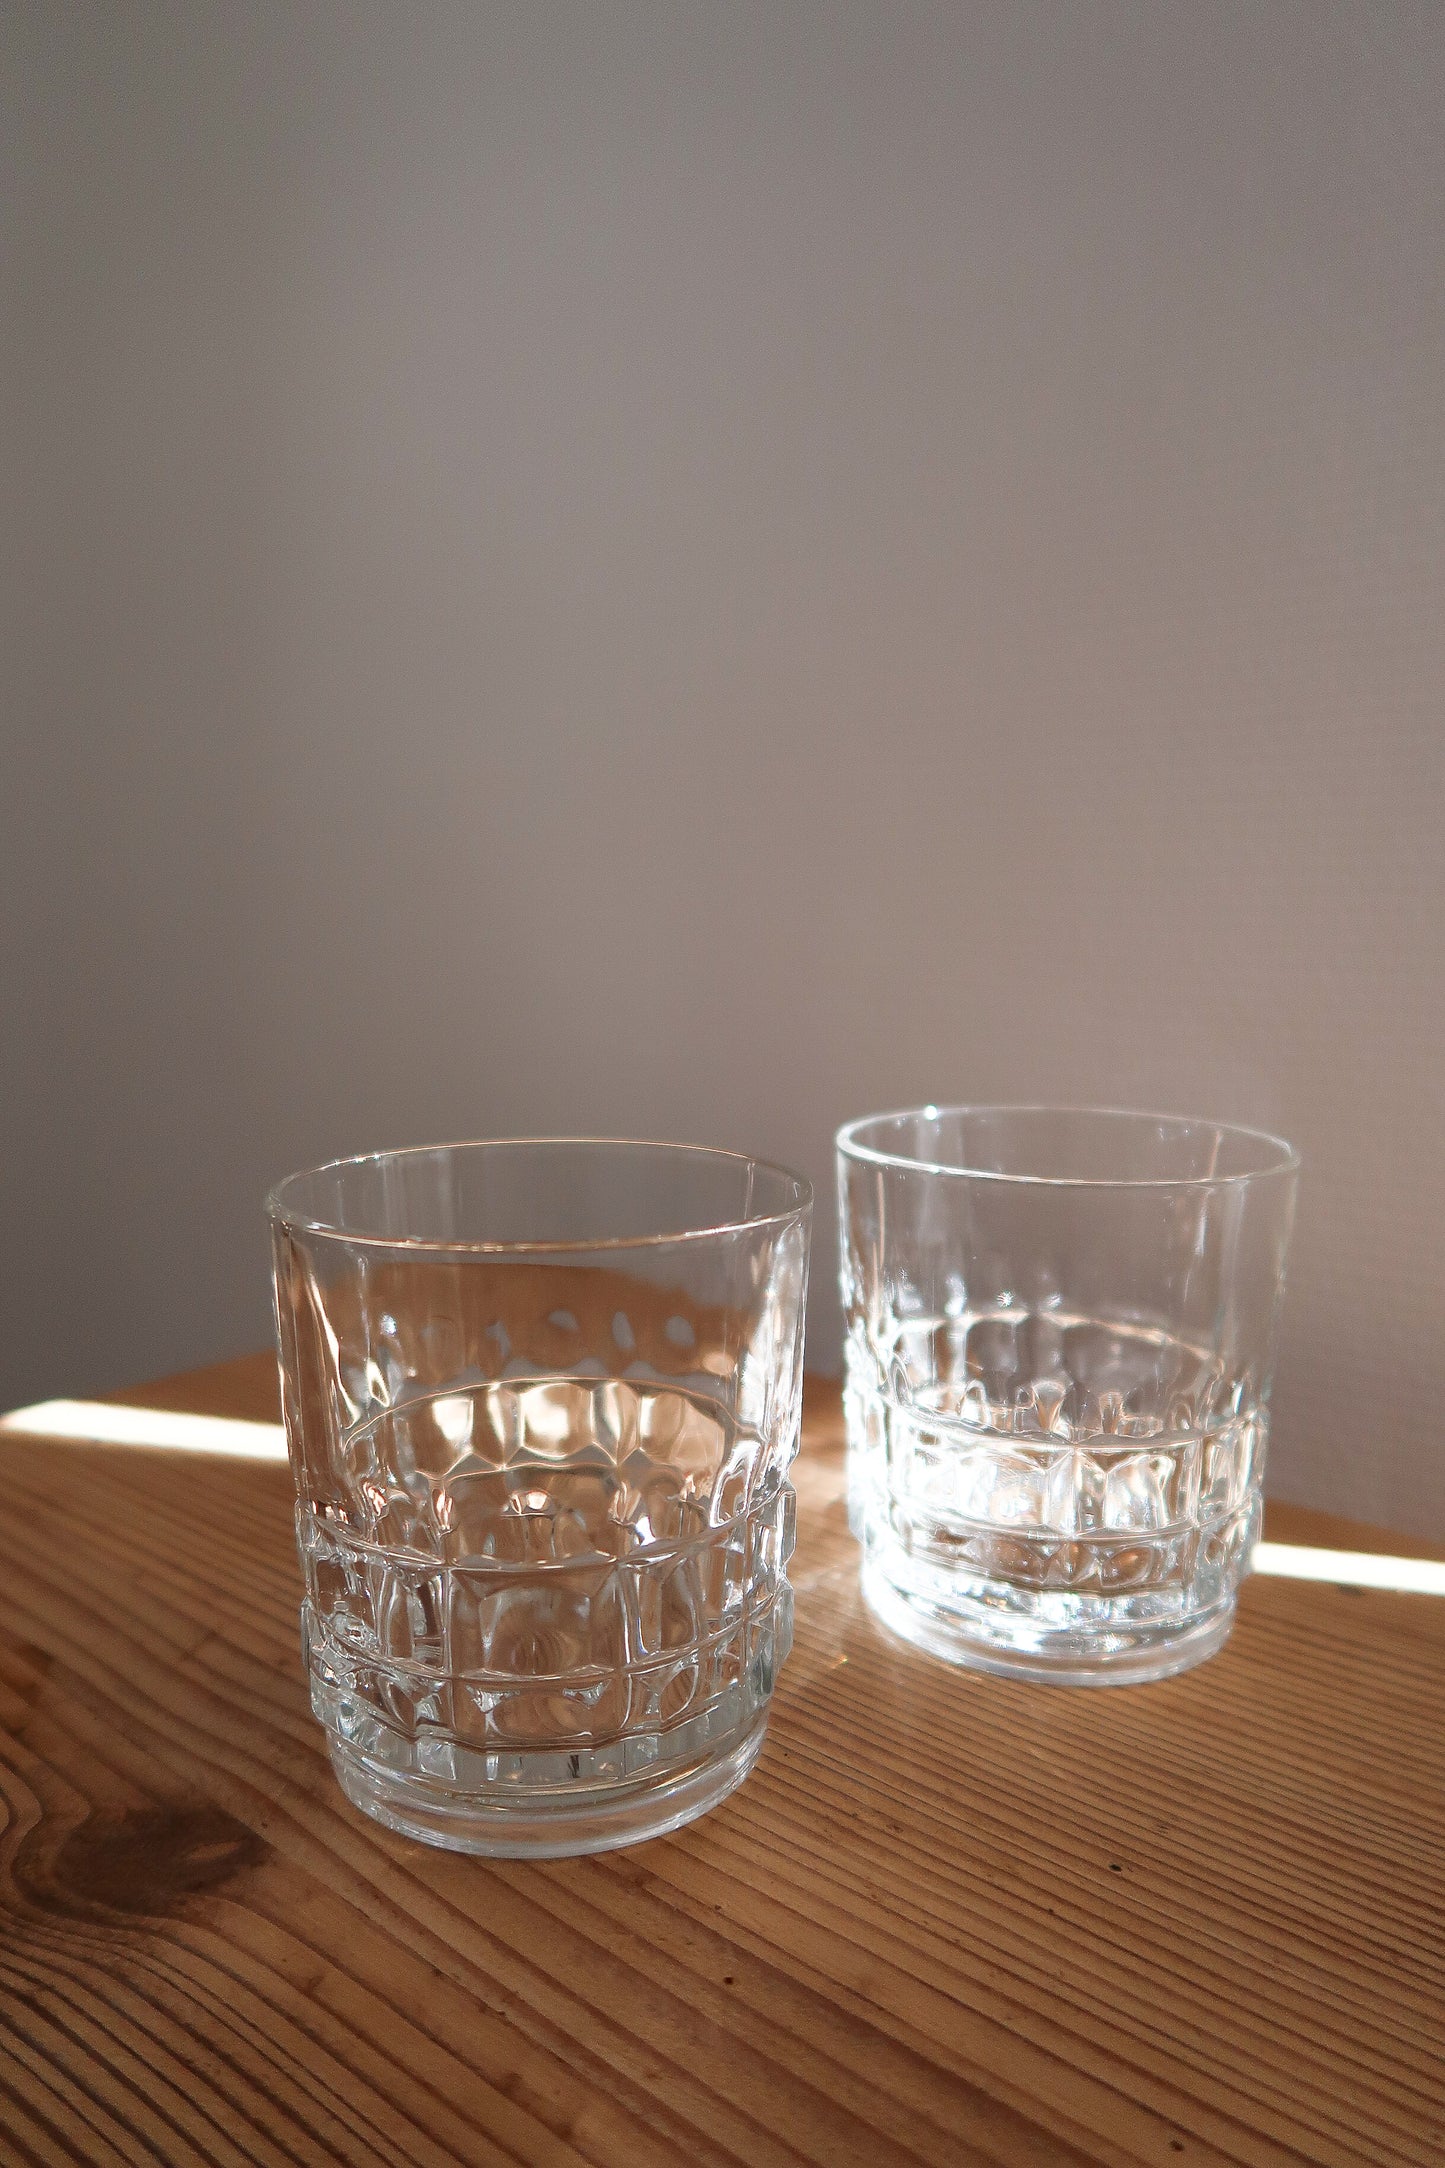 Pierre  – Verre à eau avec embossage décoratif – Lot de 4 verres – Vintage